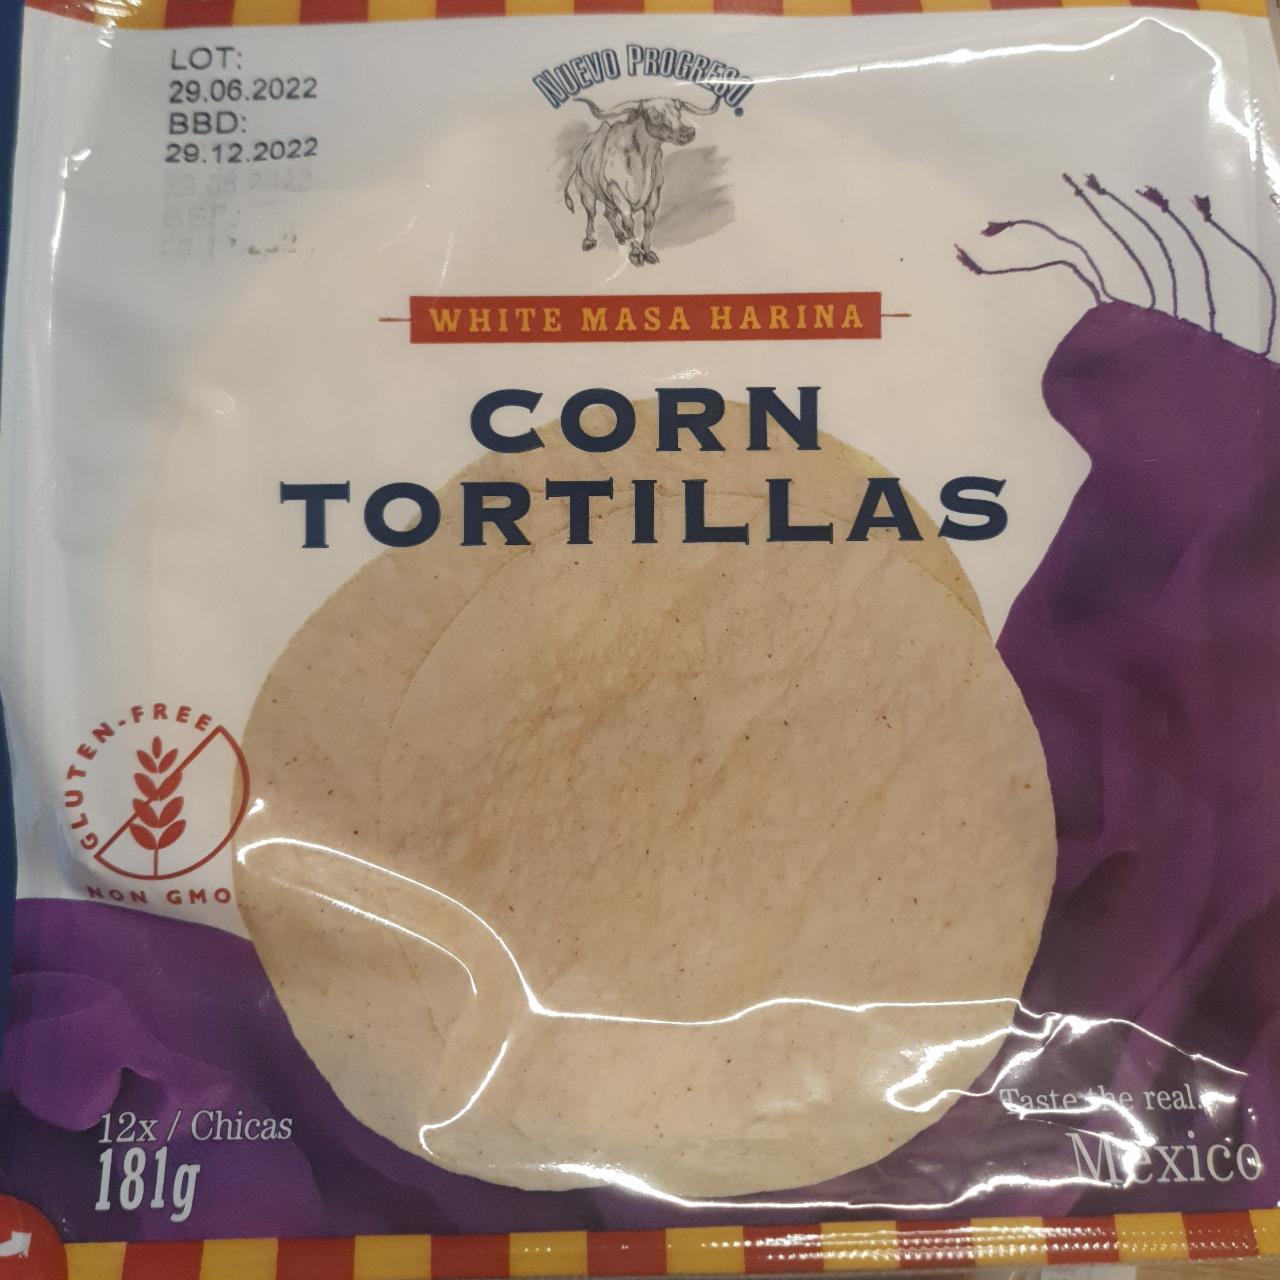 Fotografie - Corn tortillas White Masa Harina Nuevo progreso